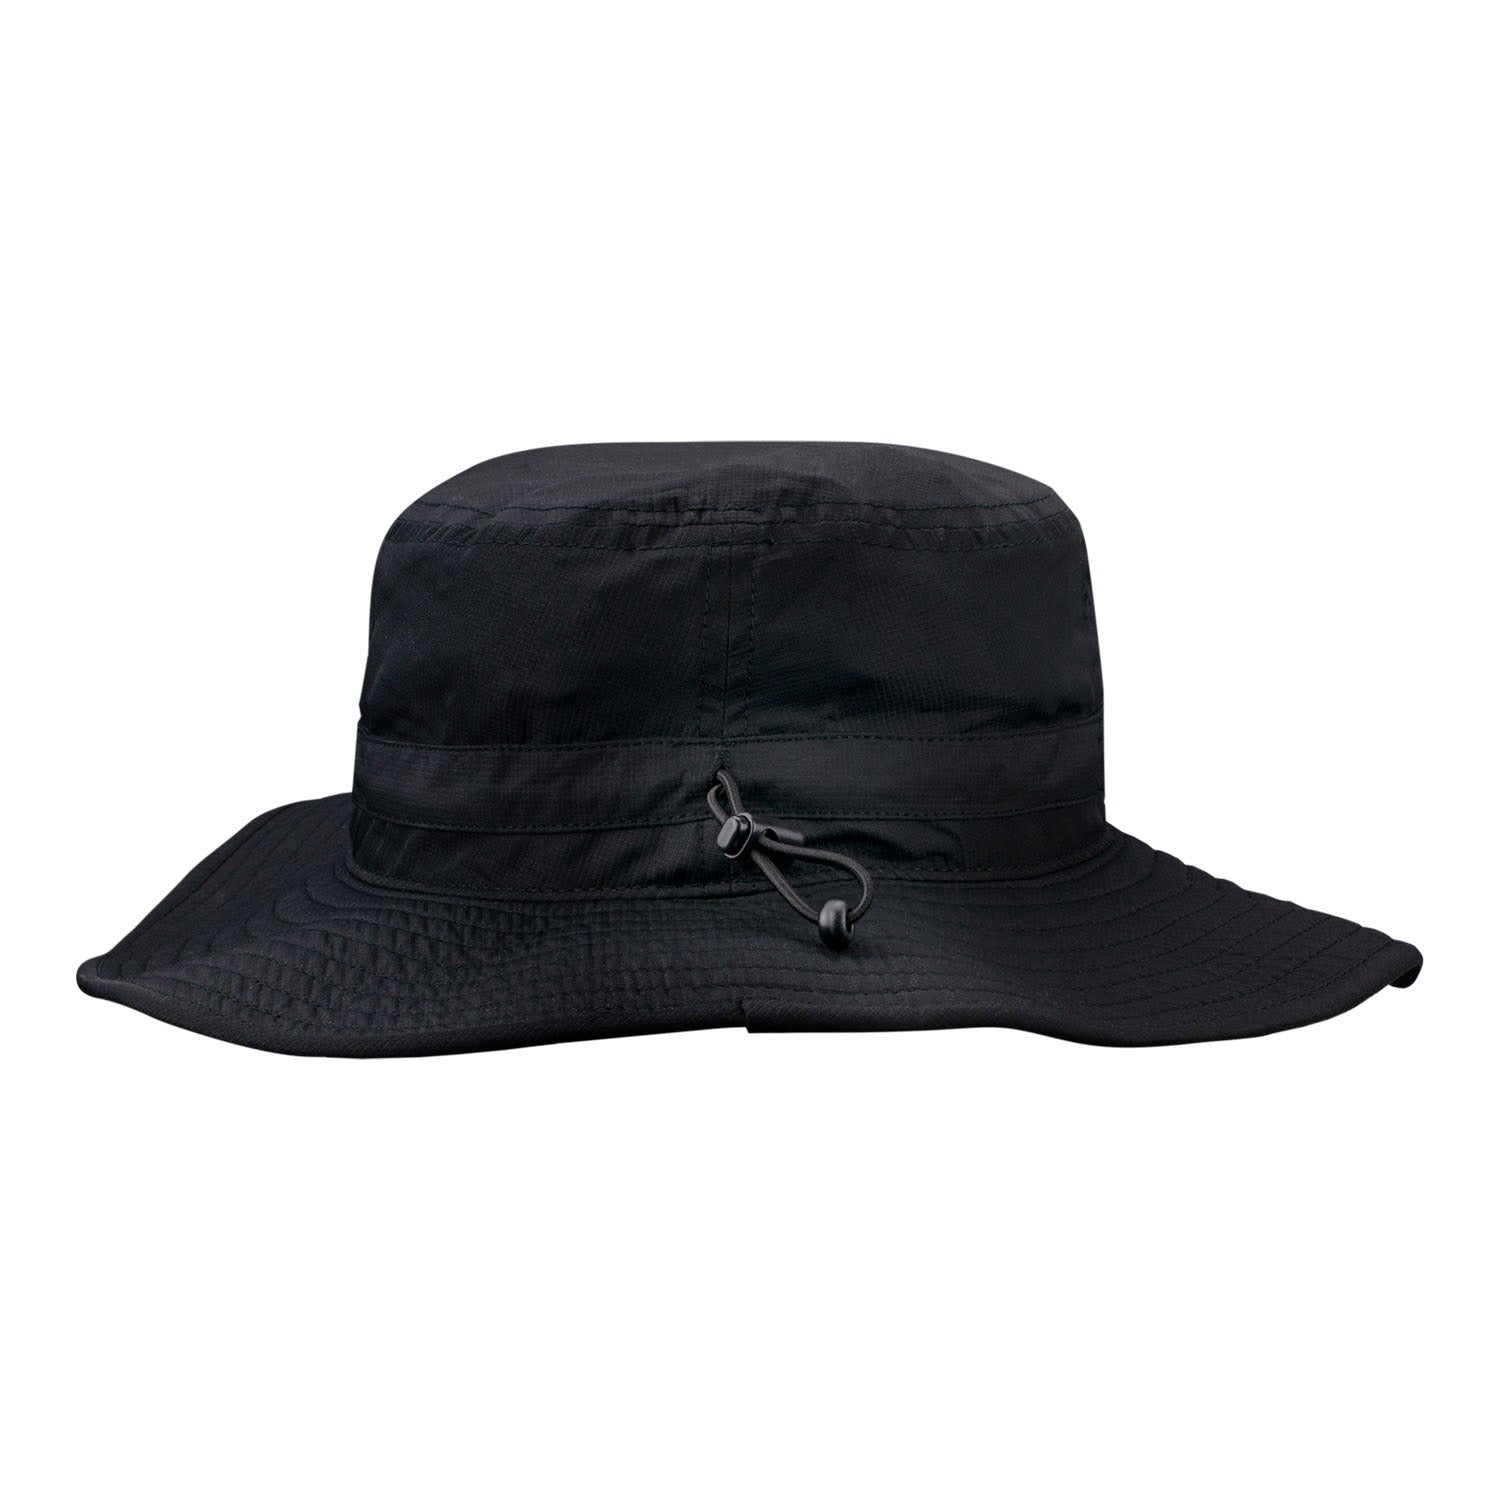 INDYCAR Bucket Hat